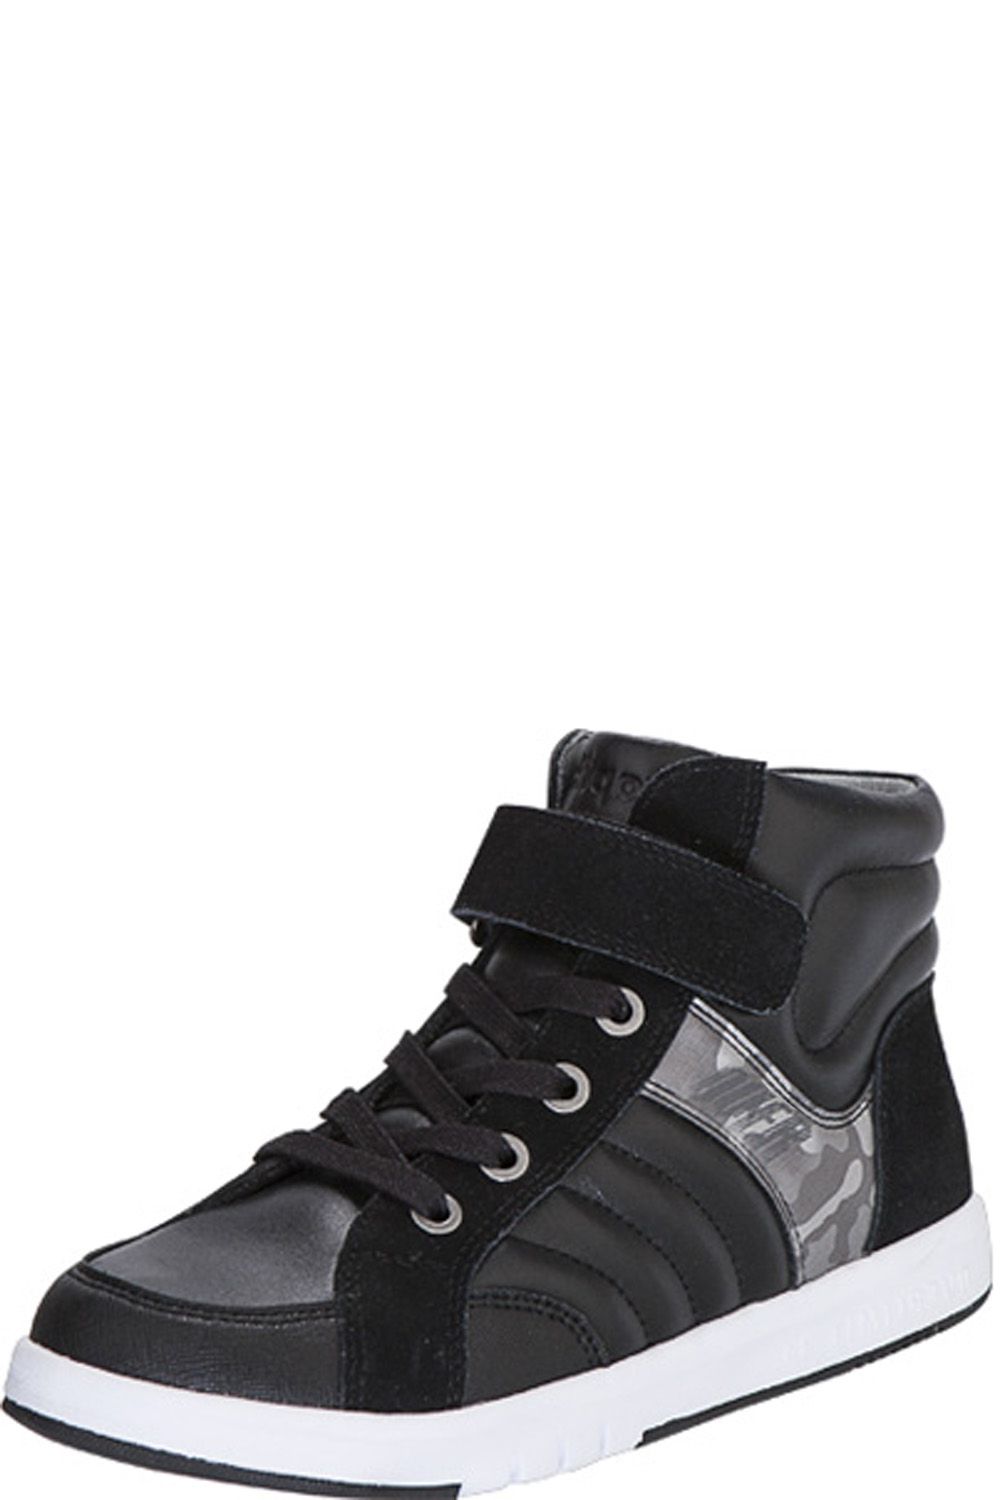 Ботинки Kapika, размер 35, цвет черный 54266y-1 - фото 1